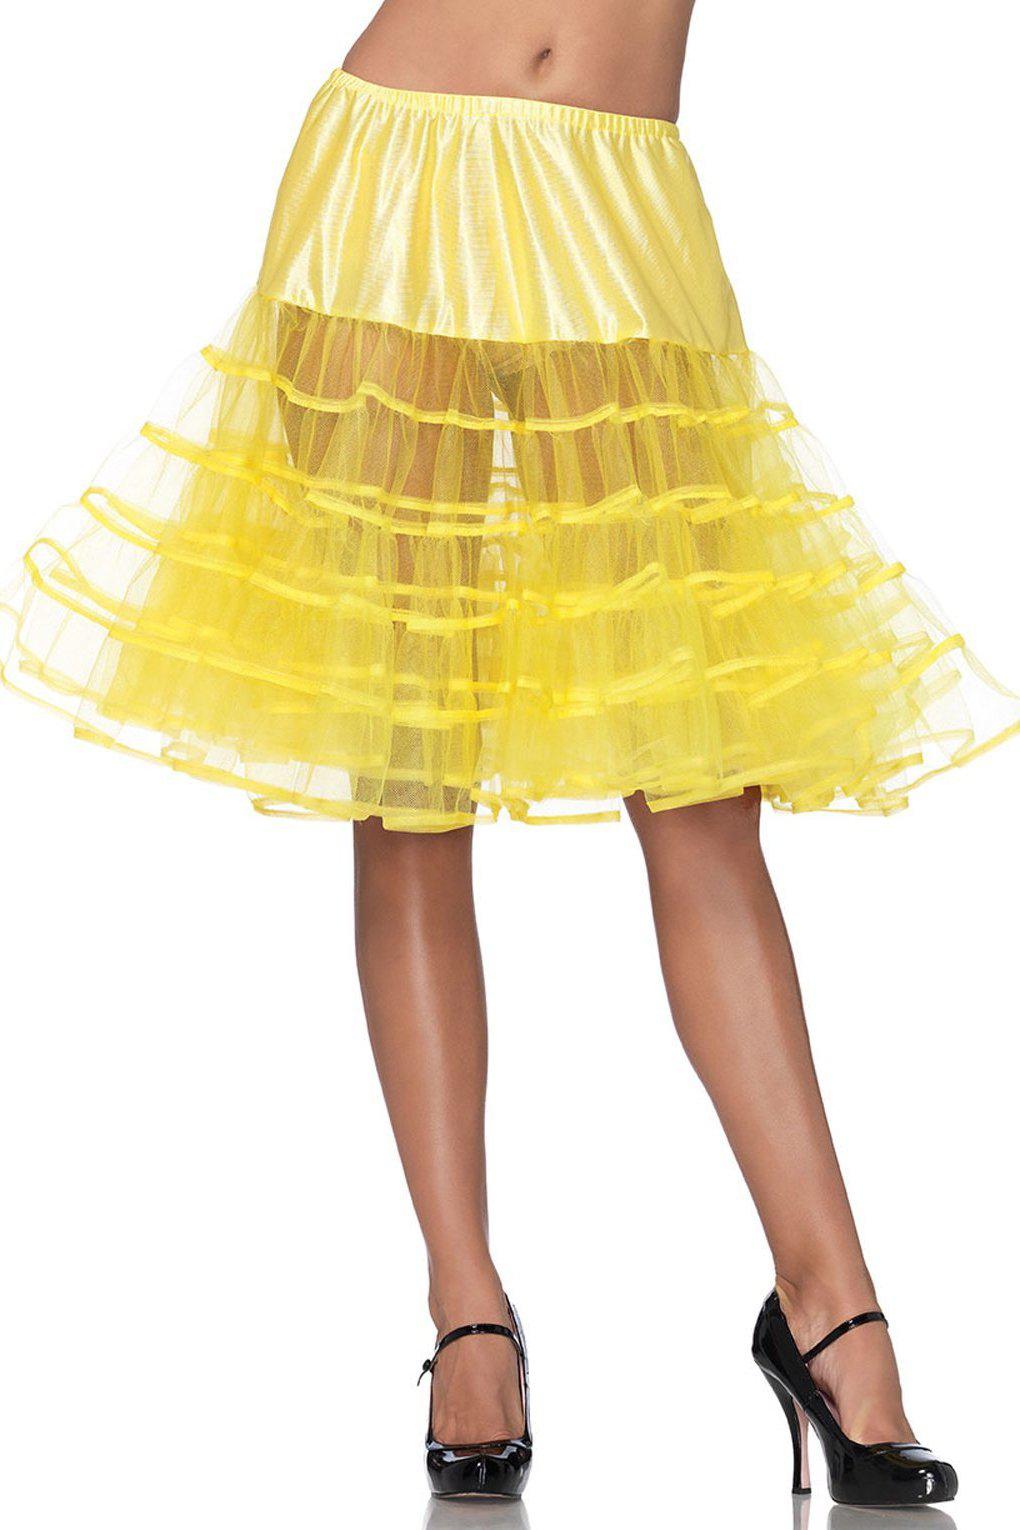 Mid-Length Petticoat-TuTu + Petticoat-Leg Avenue-Yellow-O/S-SEXYSHOES.COM